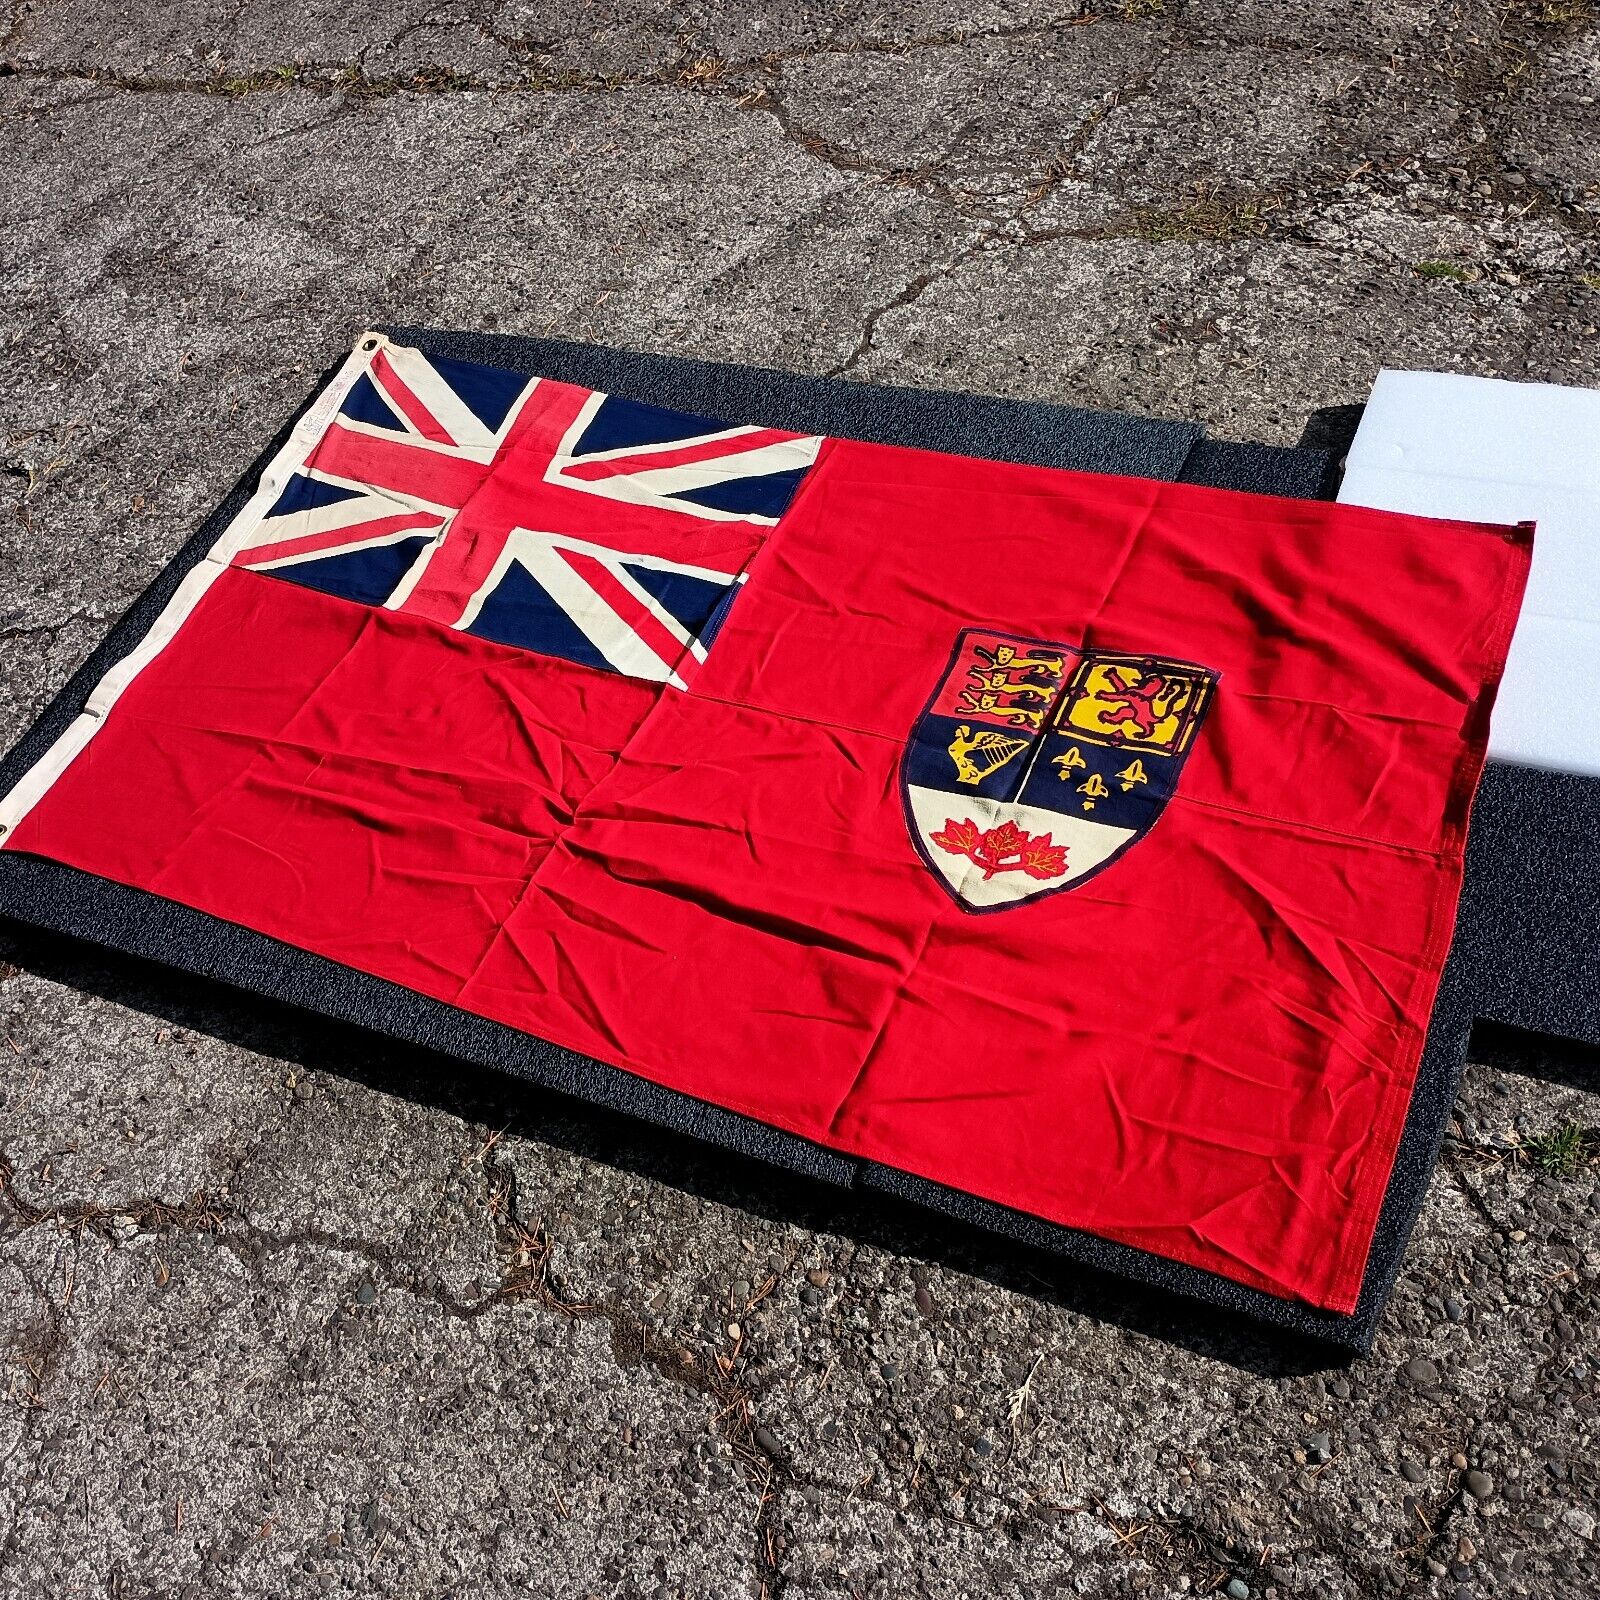 Vintage Canadian Flag Red Ensign